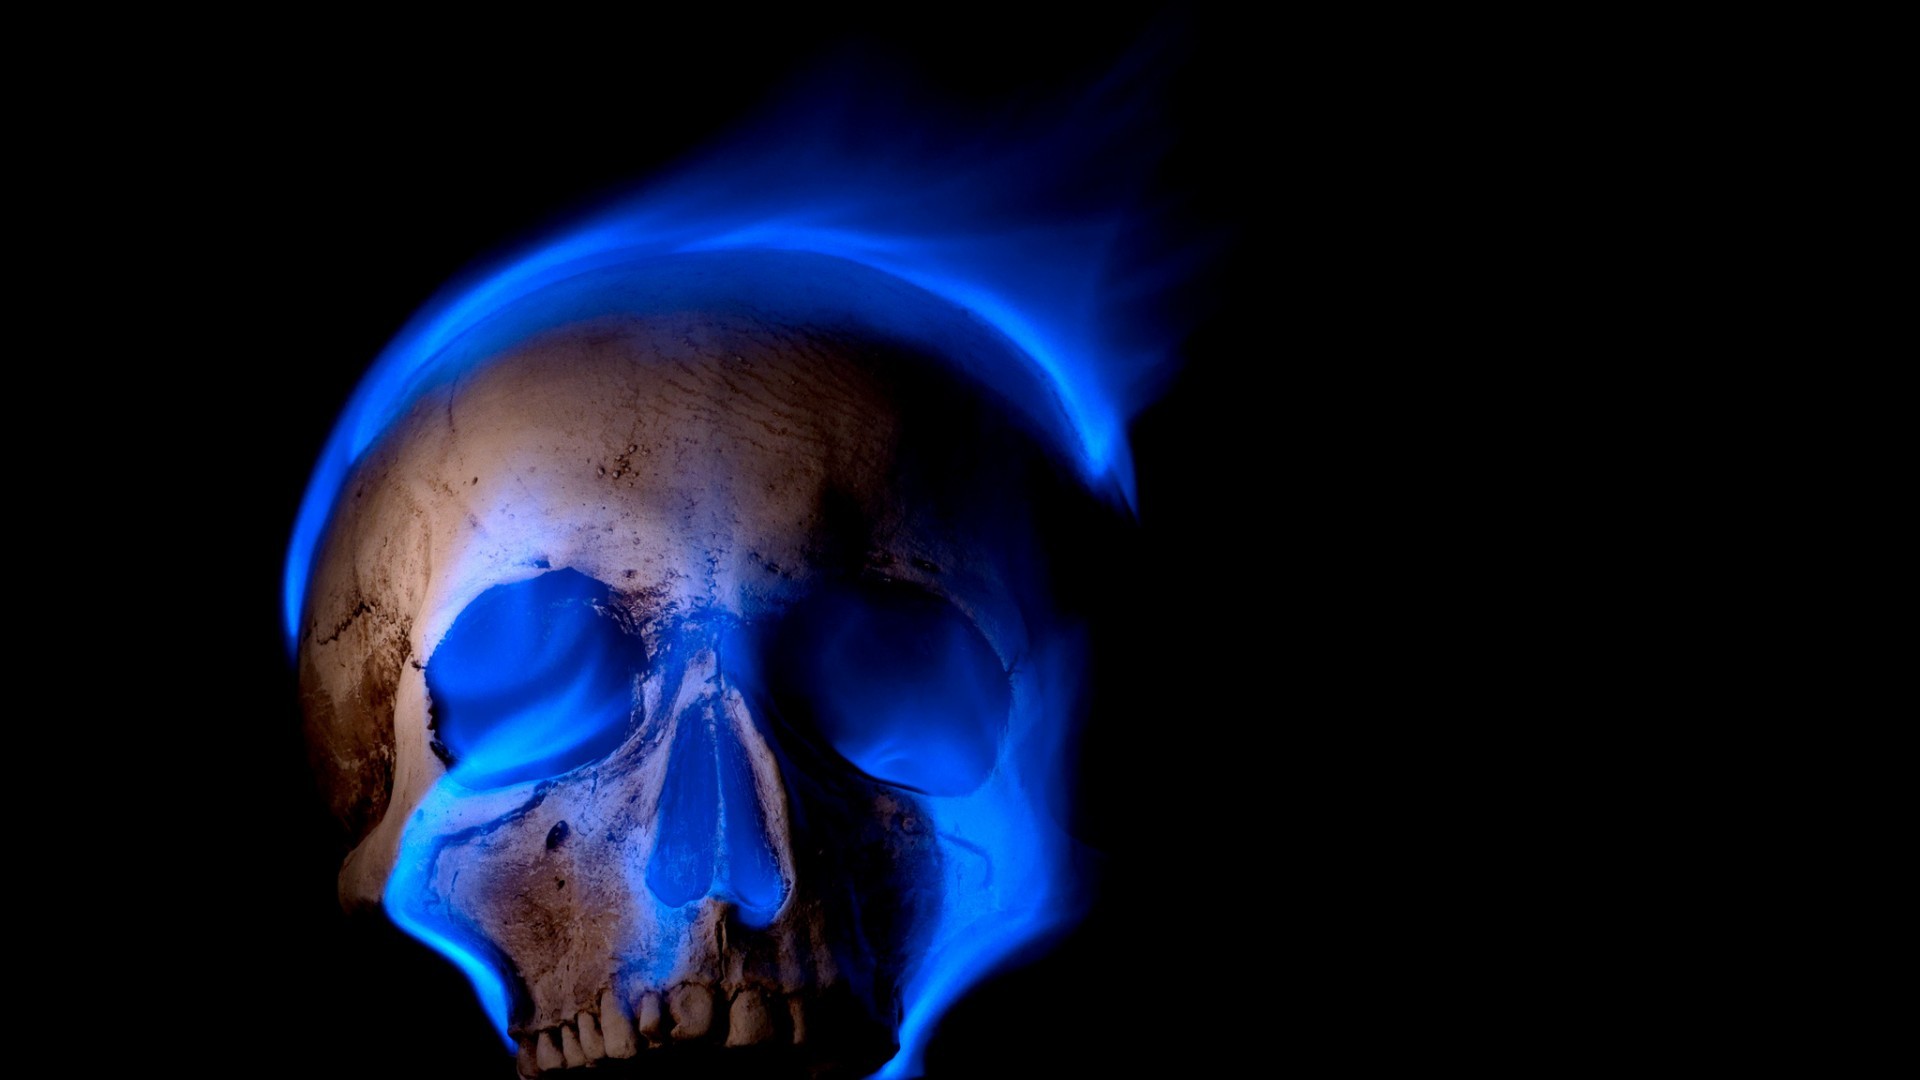 Digital Art Skull Black Background Teeth Burning Blue Flames Fire Death Spooky Gothic 1920x1080